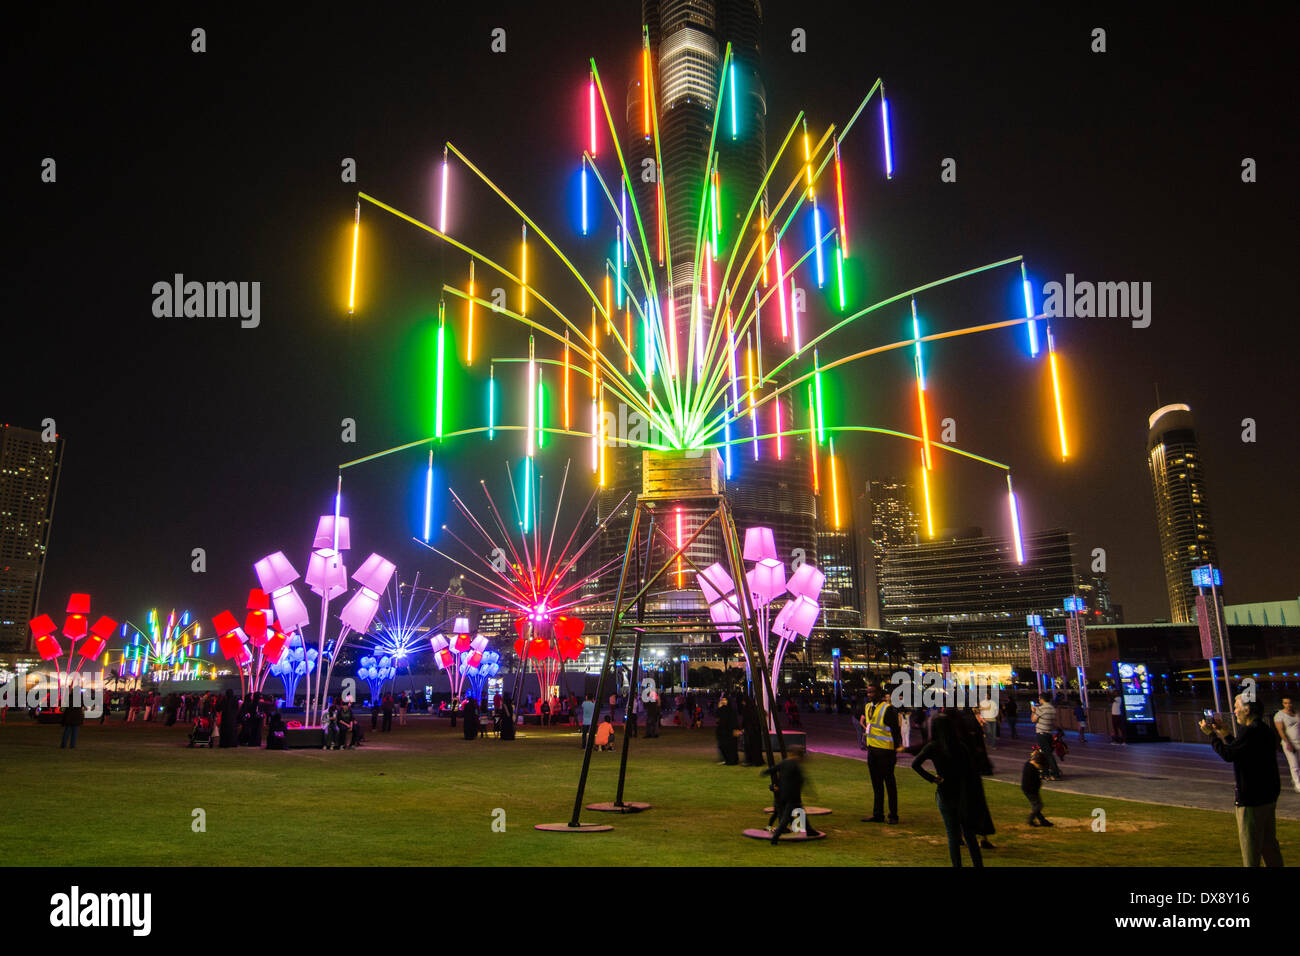 Dubaï, Émirats arabes unis 2014 Ombrellum ; sculptures lumineuses par Tilt studio à la soirée d'ouverture du Festival des lumières de Dubaï inaugurale tenue en centre ville avec beaucoup de lumière et sur vidéo les œuvres d'art Crédit : Iain Masterton/Alamy Live News Banque D'Images